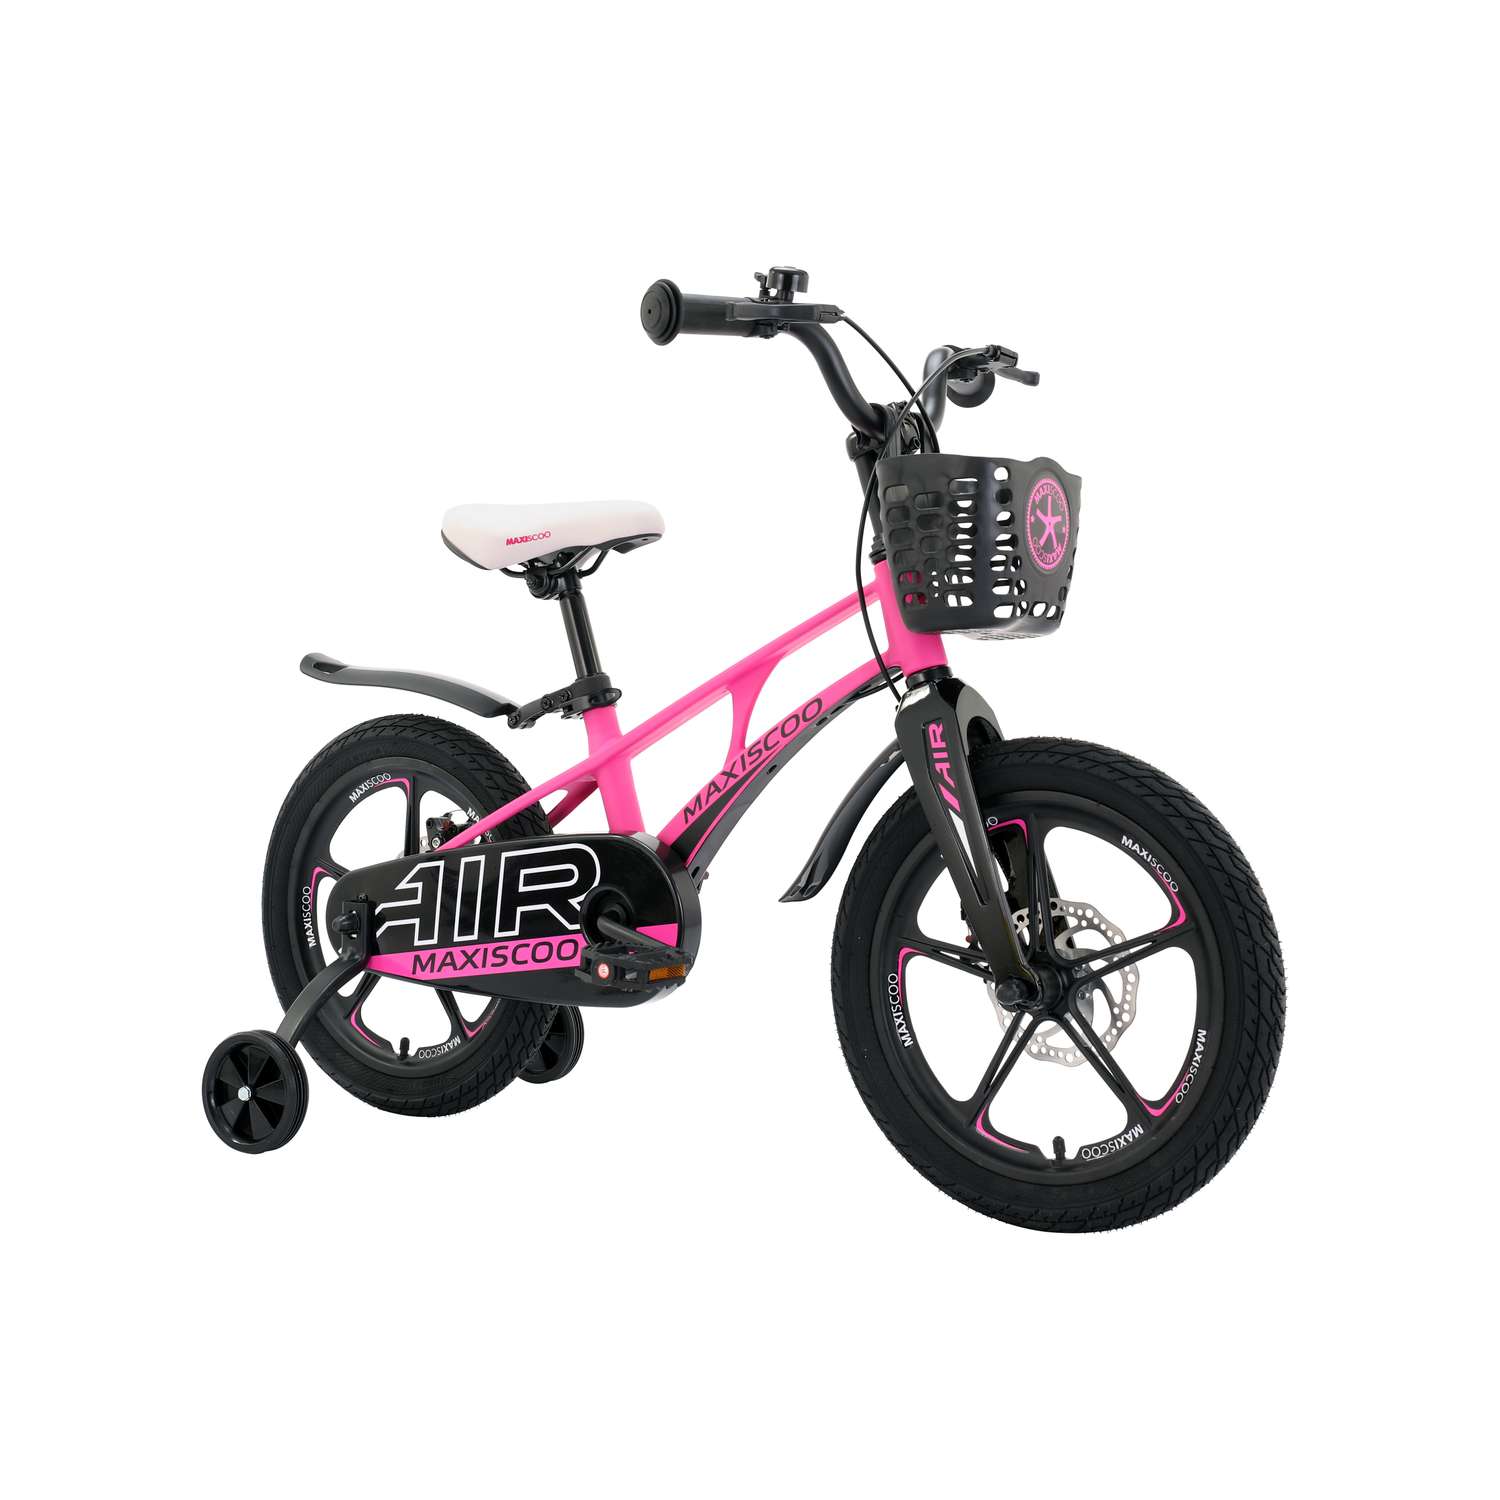 Детский двухколесный велосипед Maxiscoo Airделюкс плюс 16 розовый матовый - фото 2